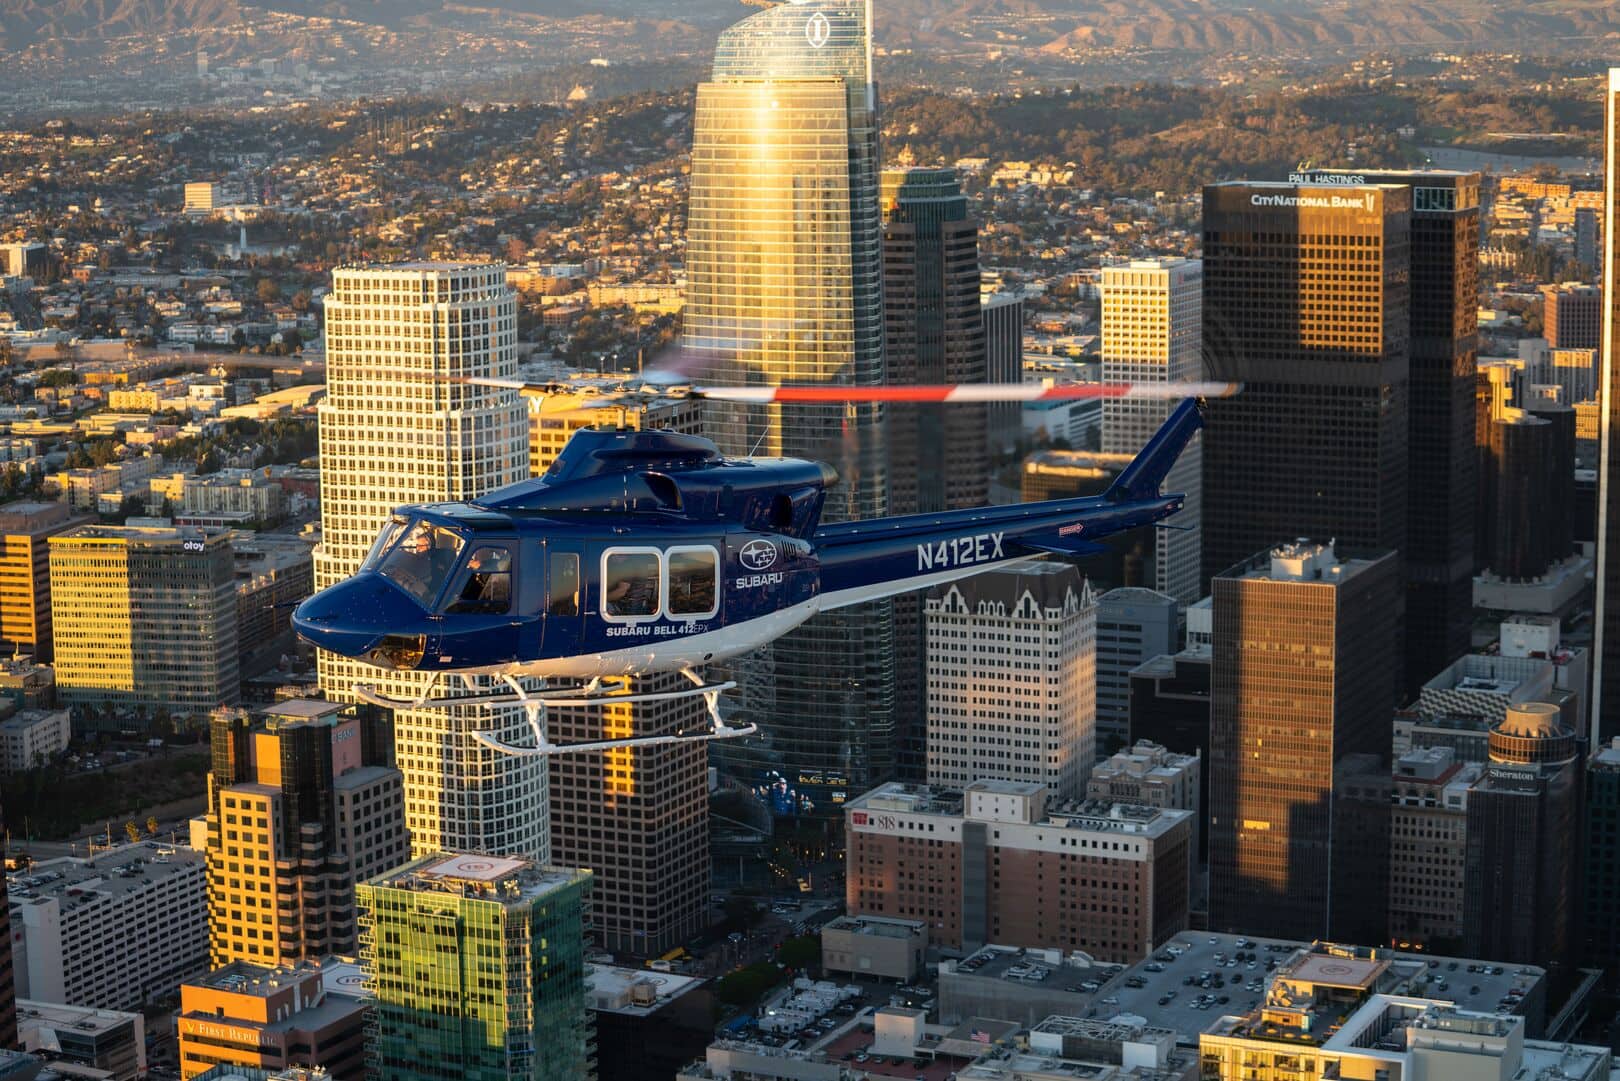 Presentation-Subaru-Bell 412 EPX Los Angeles 31